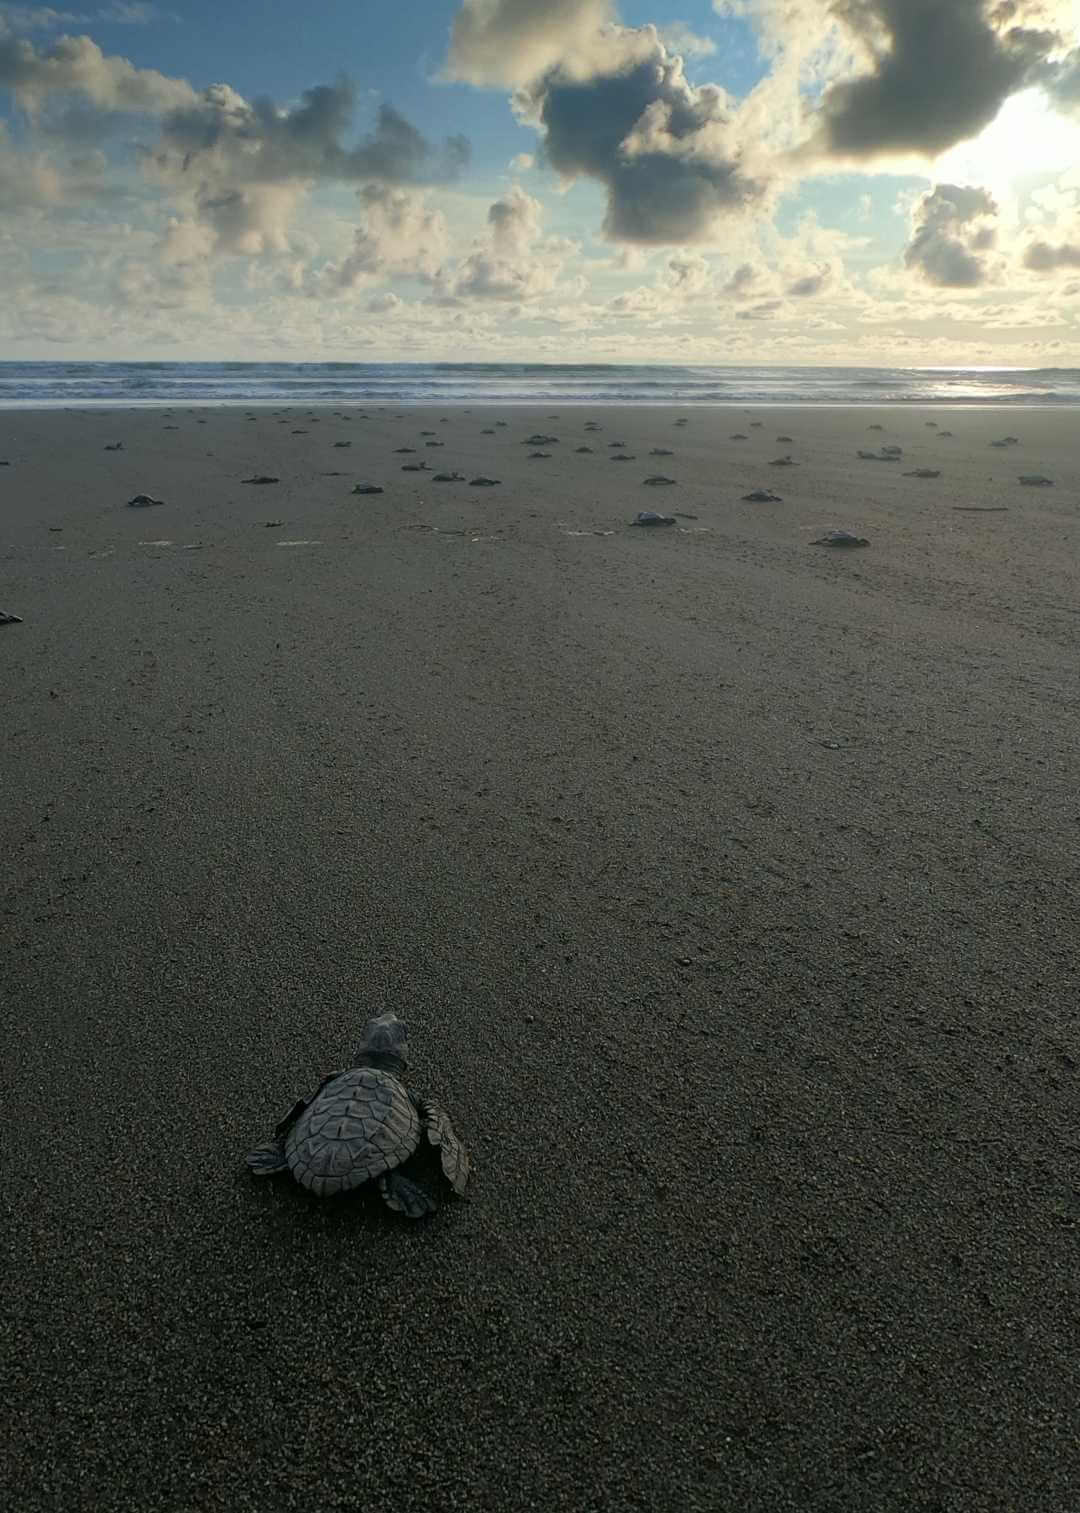 Liberación de tortugas marinas en el Pacífico colombiano